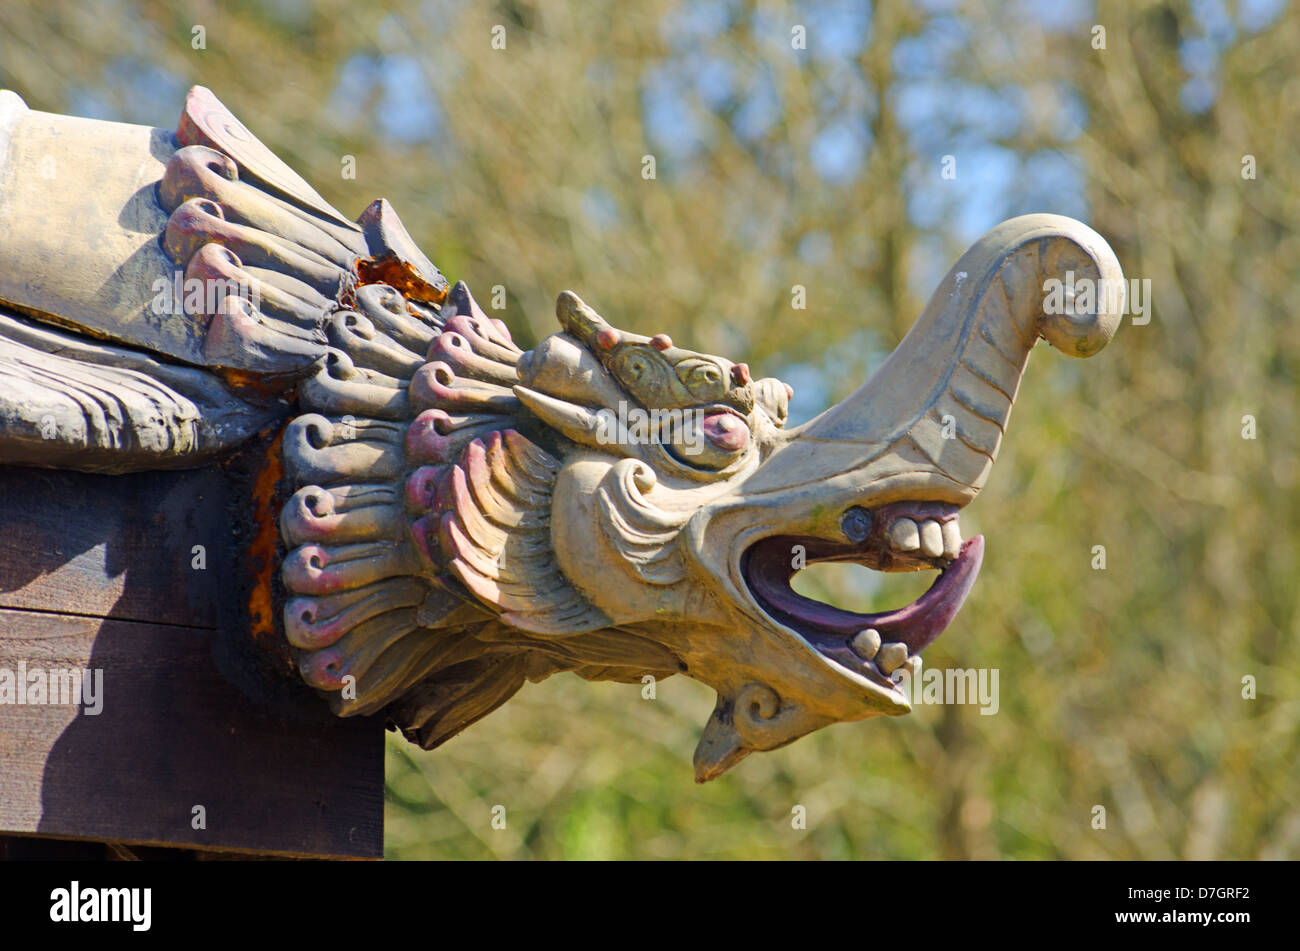 Chinese pagoda dragon head Stock Photo